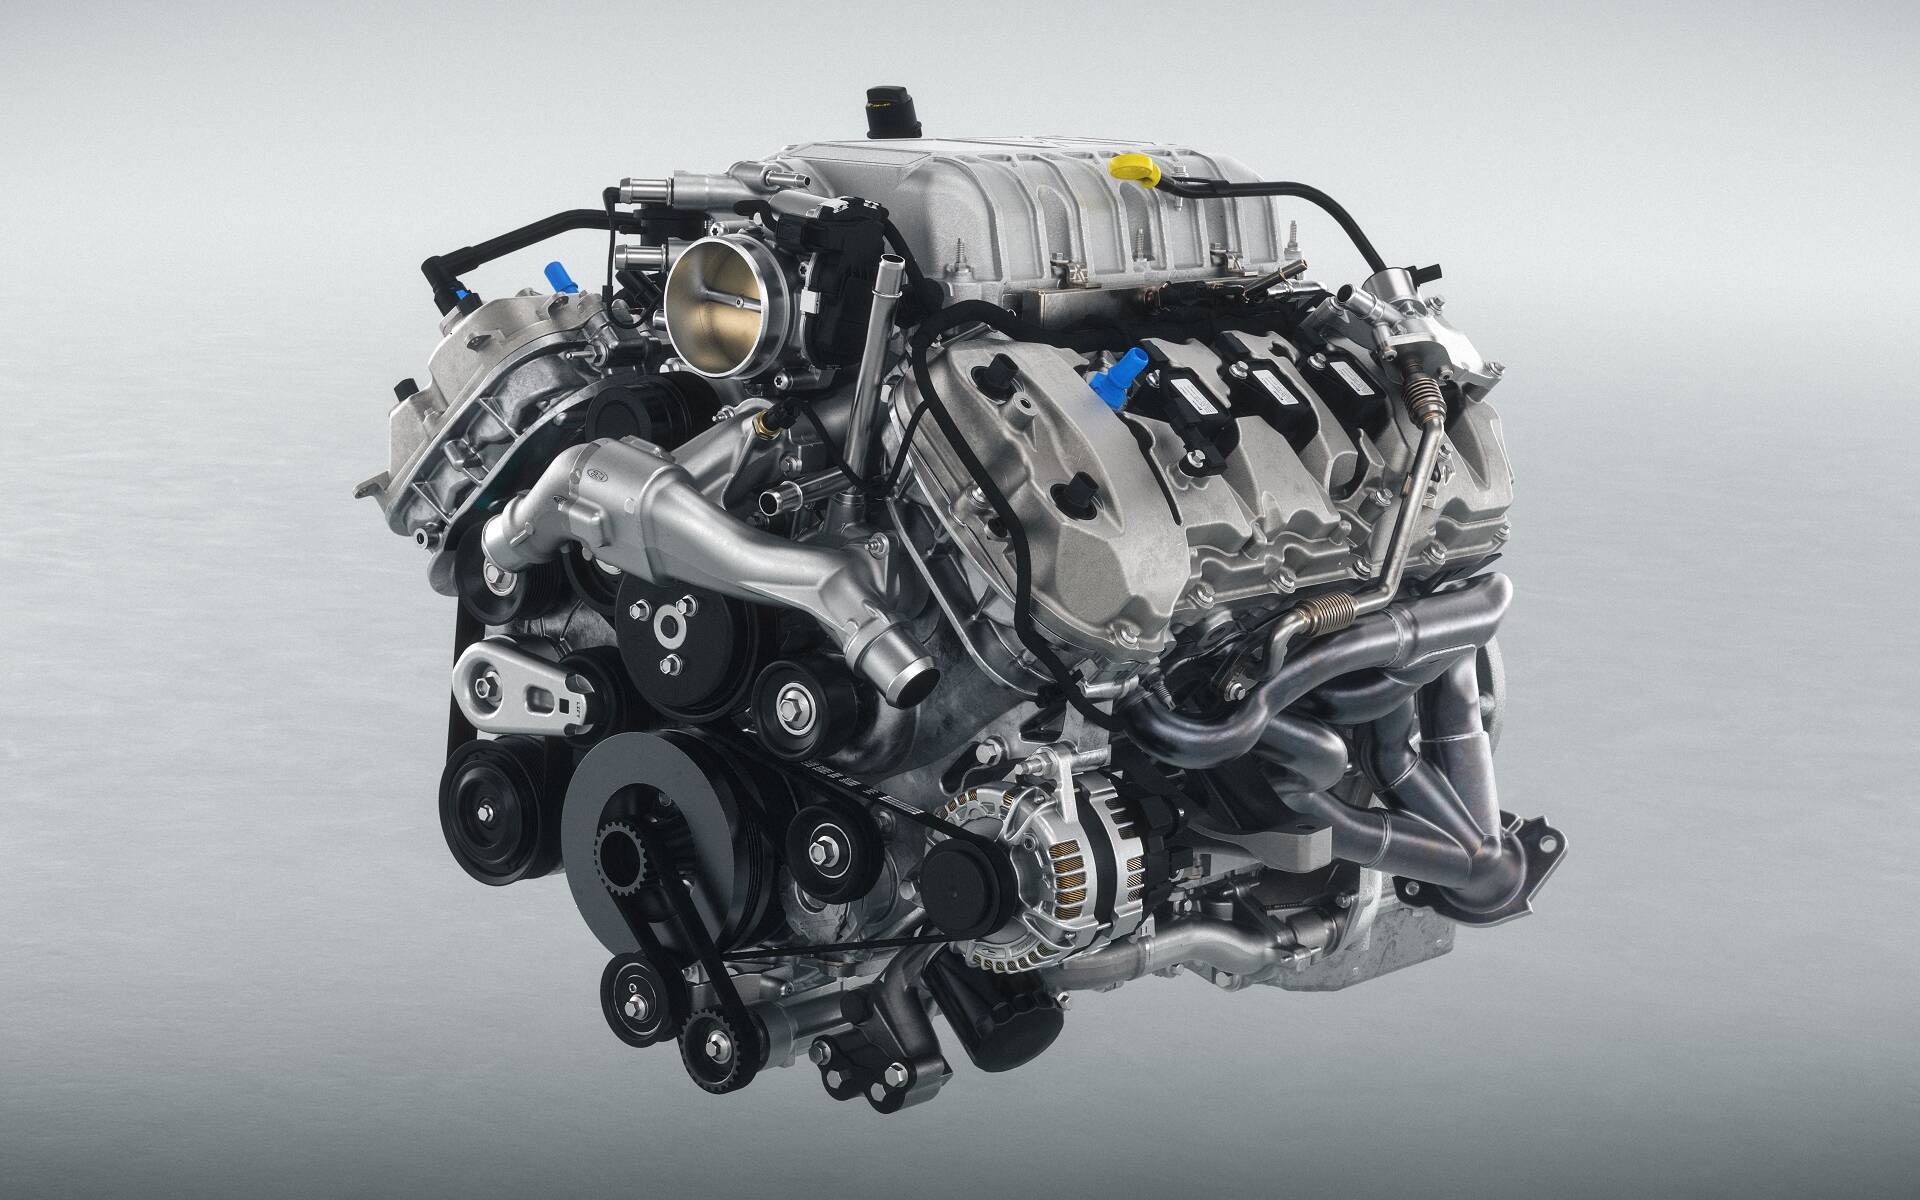 Ford Mustang GTD 2025 : une bête de circuit de plus de 800 chevaux… pour la route ! 585061-ford-mustang-gtd-2025-une-bete-de-circuit-de-plus-de-800-chevaux-pour-la-route